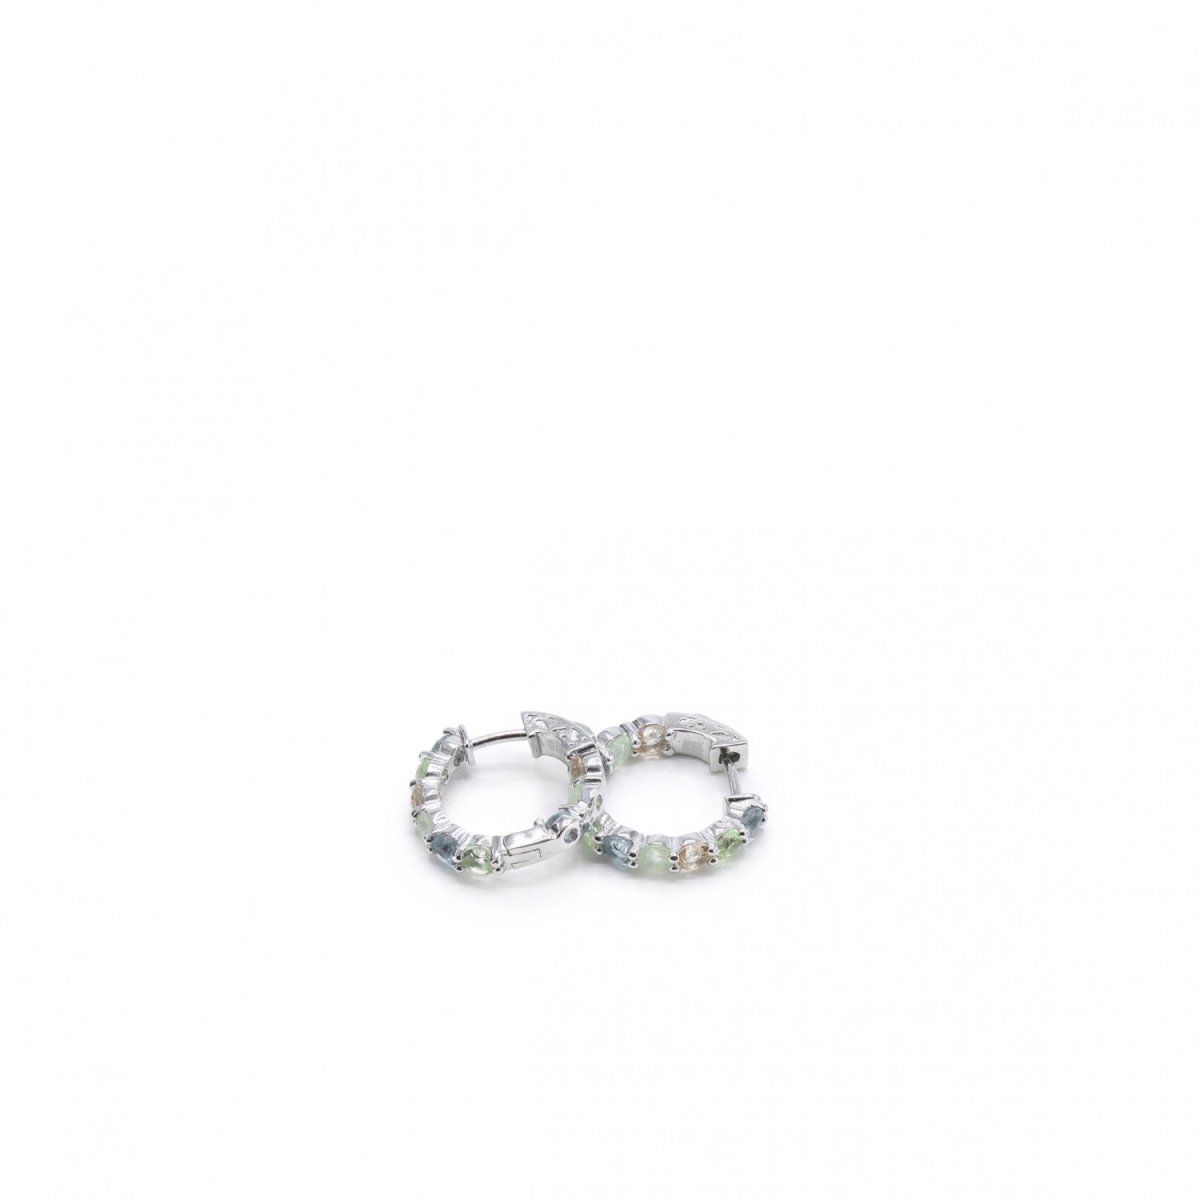 Earrings - Small hoop earrings made of gemstones in warm tones